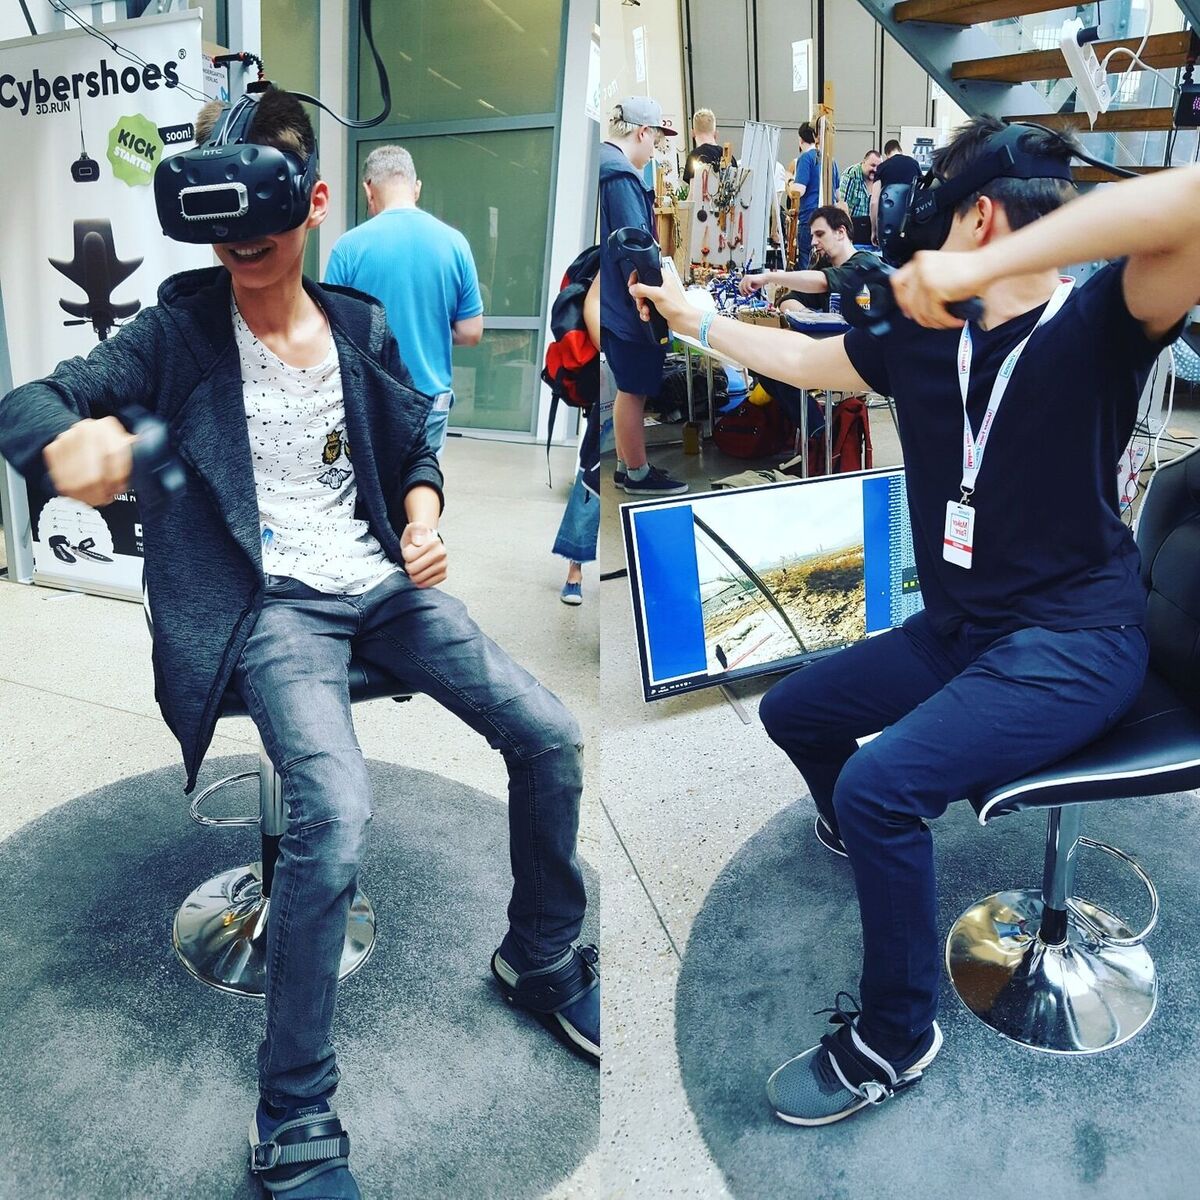 Cybershoes, des patins pour se déplacer dans réalité virtuelle